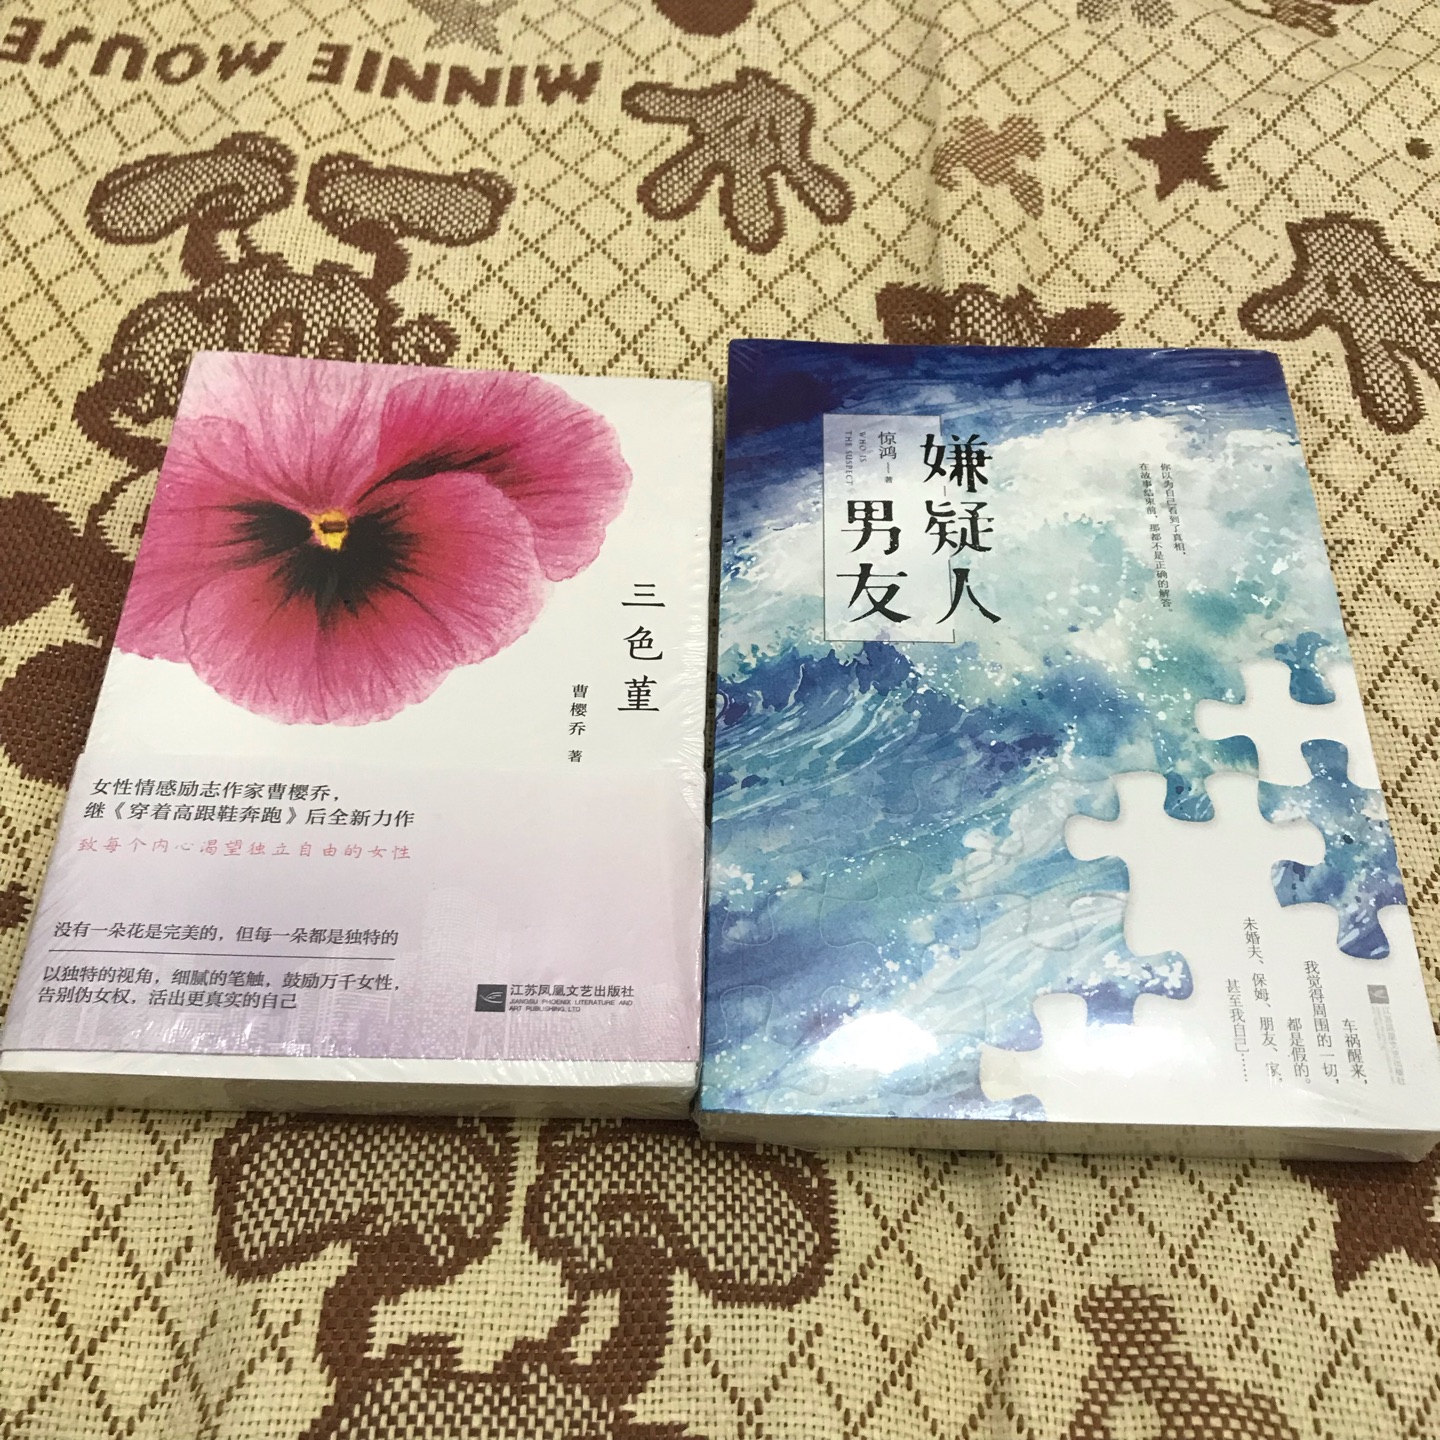 99选10买的，还没打开看，目前还在看东野圭*的书。以后有时间再看吧！